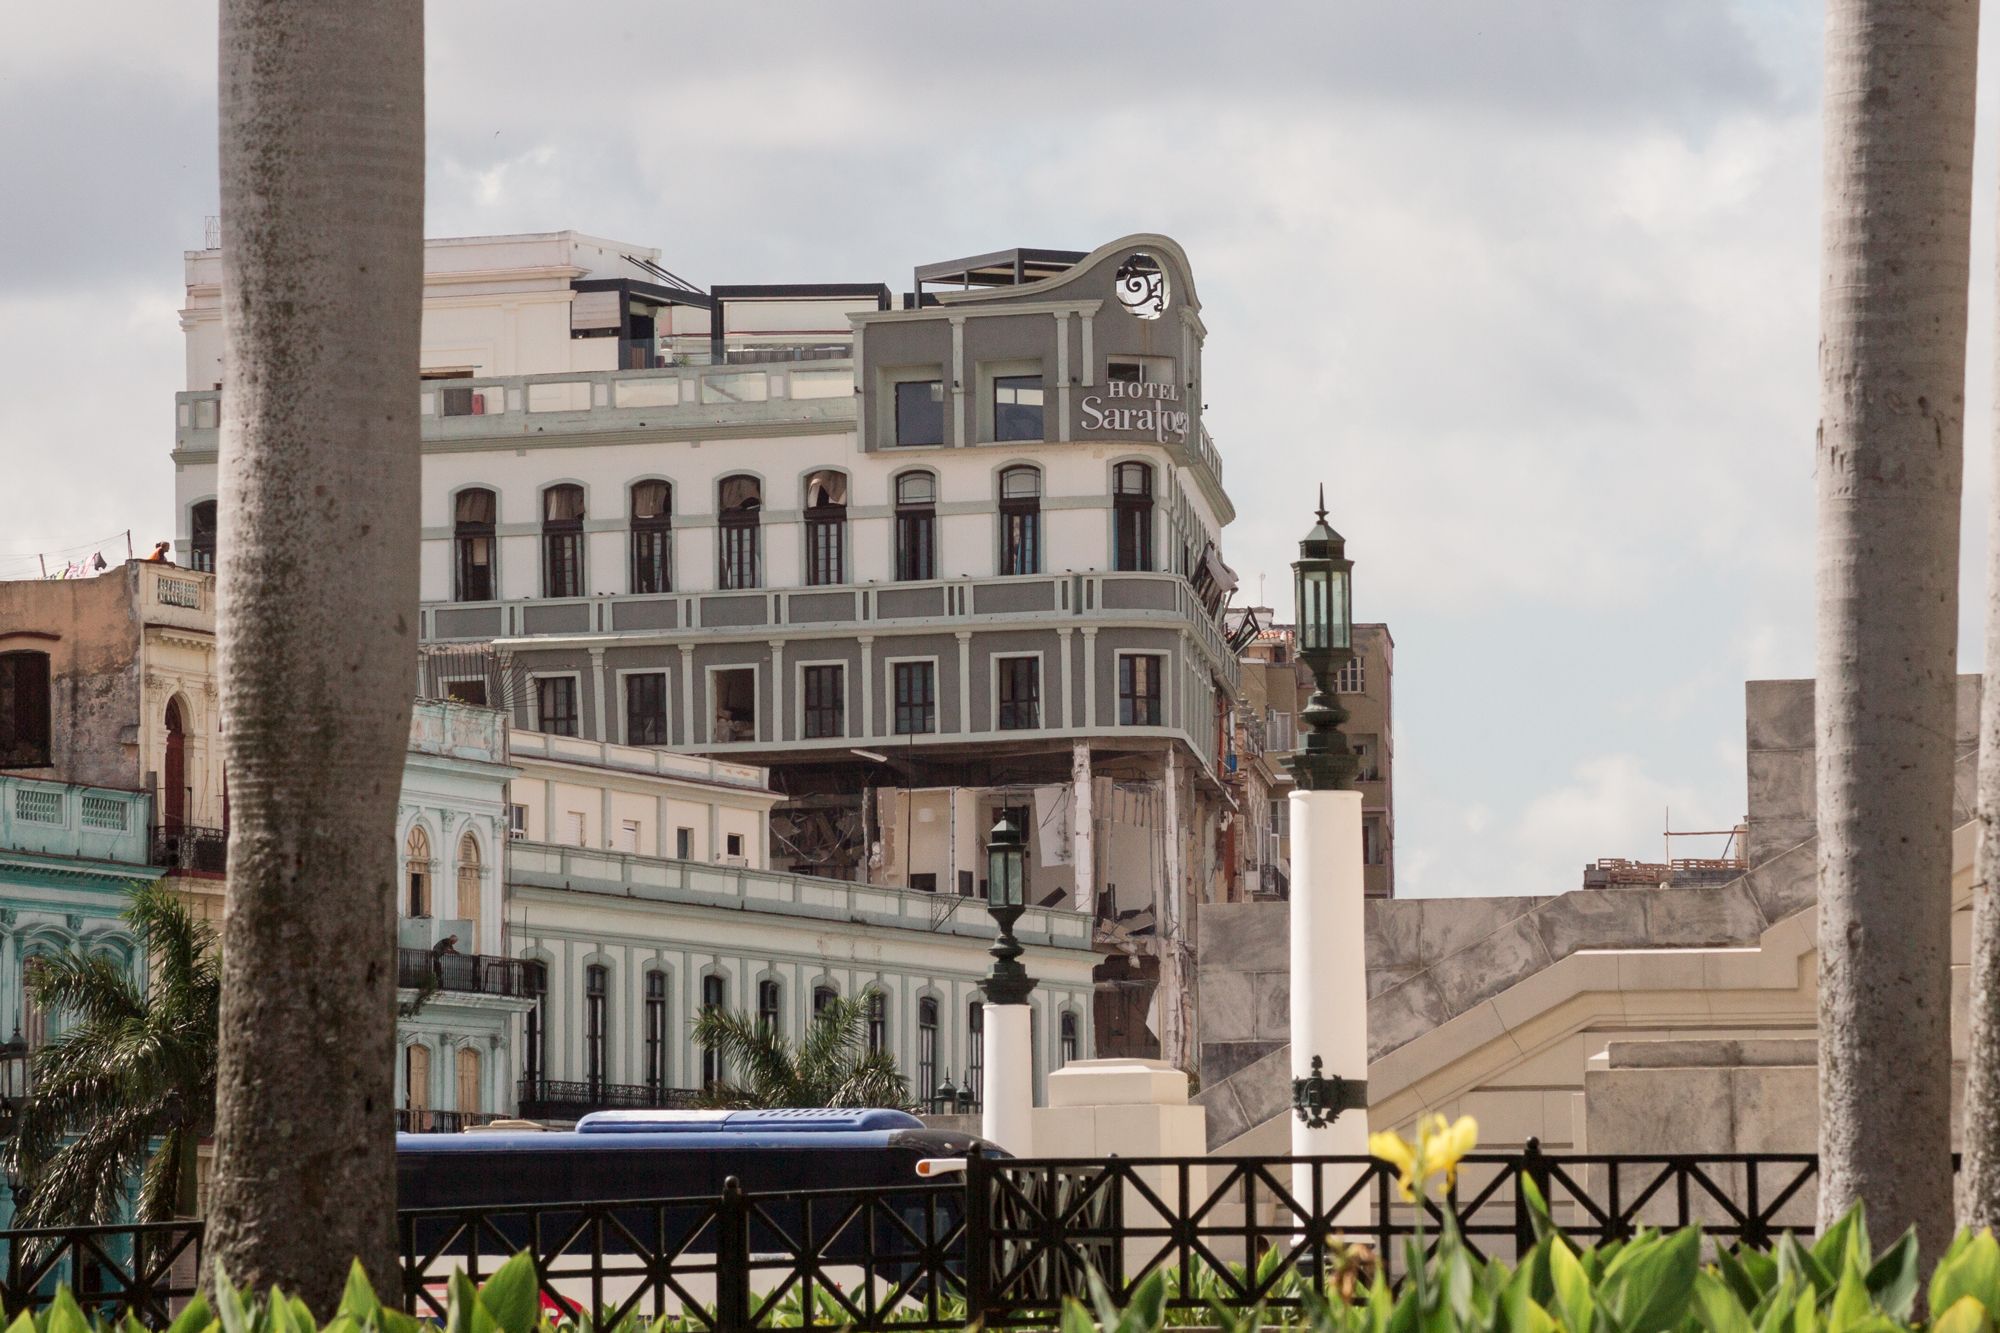 Vista del hotel Saratoga, La Habana, 7 de mayo de 2022 / Foto: El Estornudo